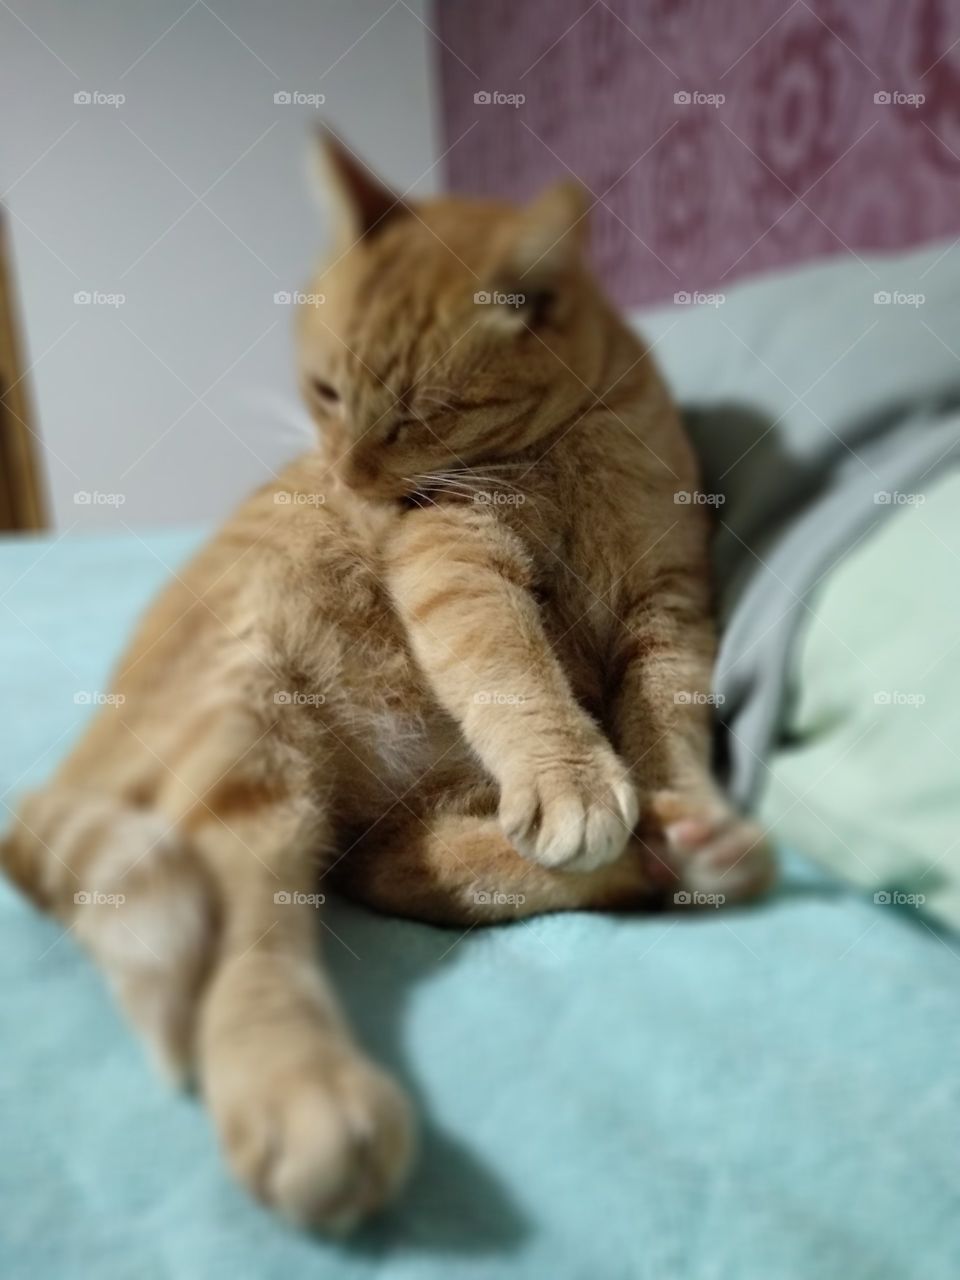 fat orange cat bath time